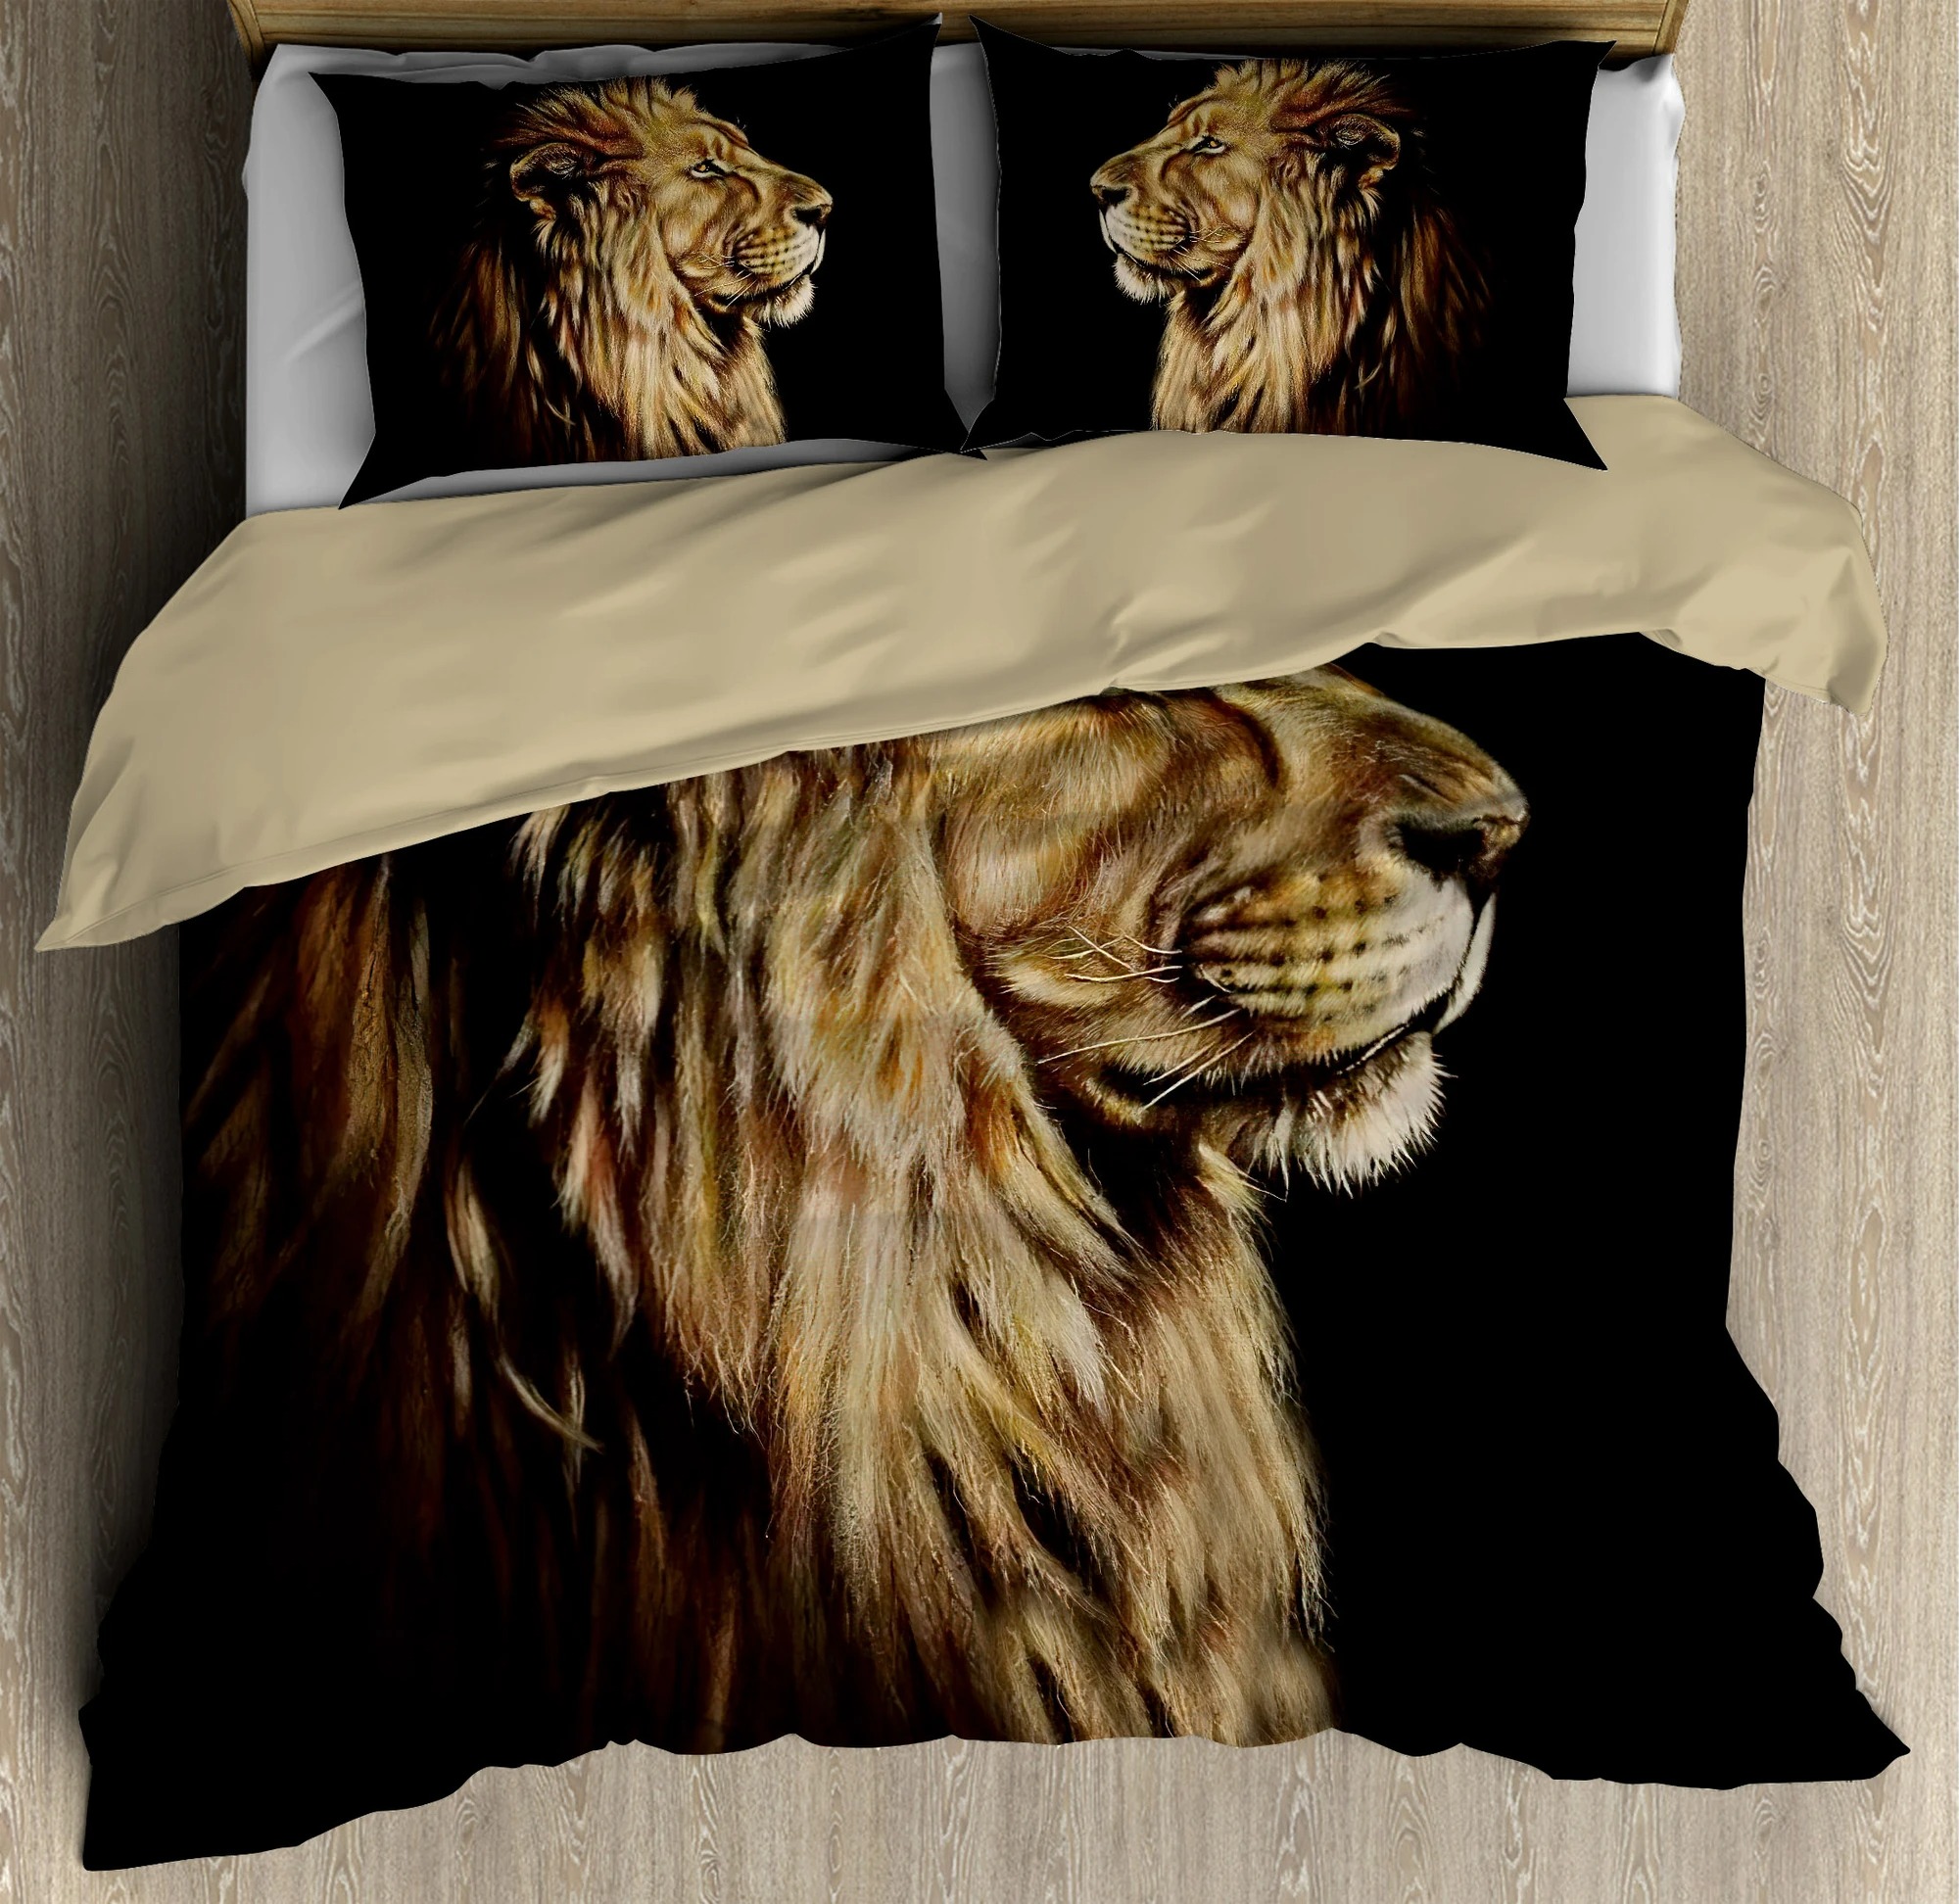 Lion king bedding set3